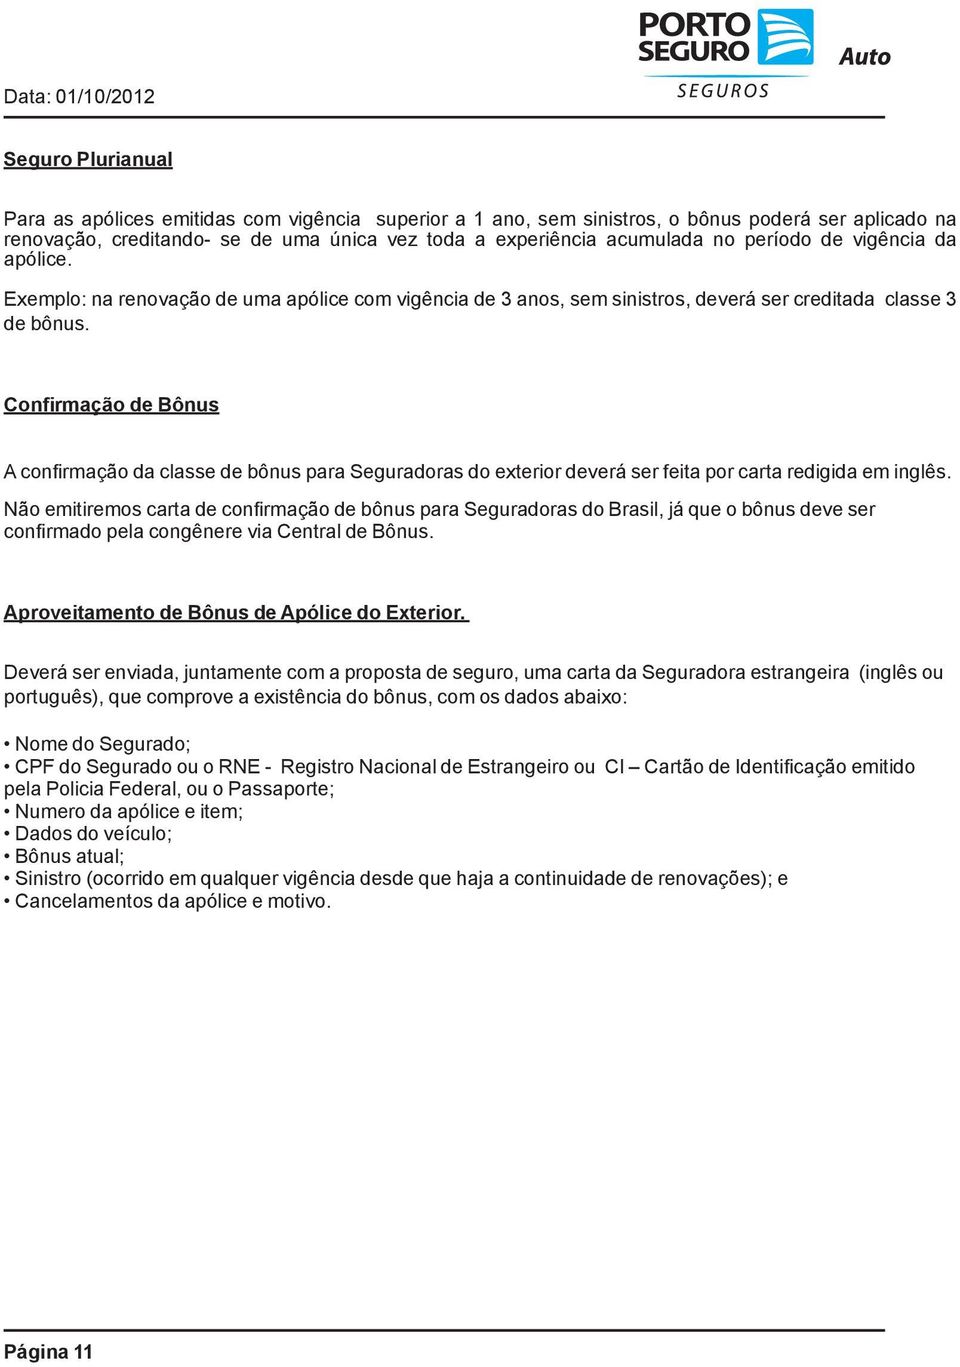 Confirmação de Bônus A confirmação da classe de bônus para Seguradoras do exterior deverá ser feita por carta redigida em inglês.